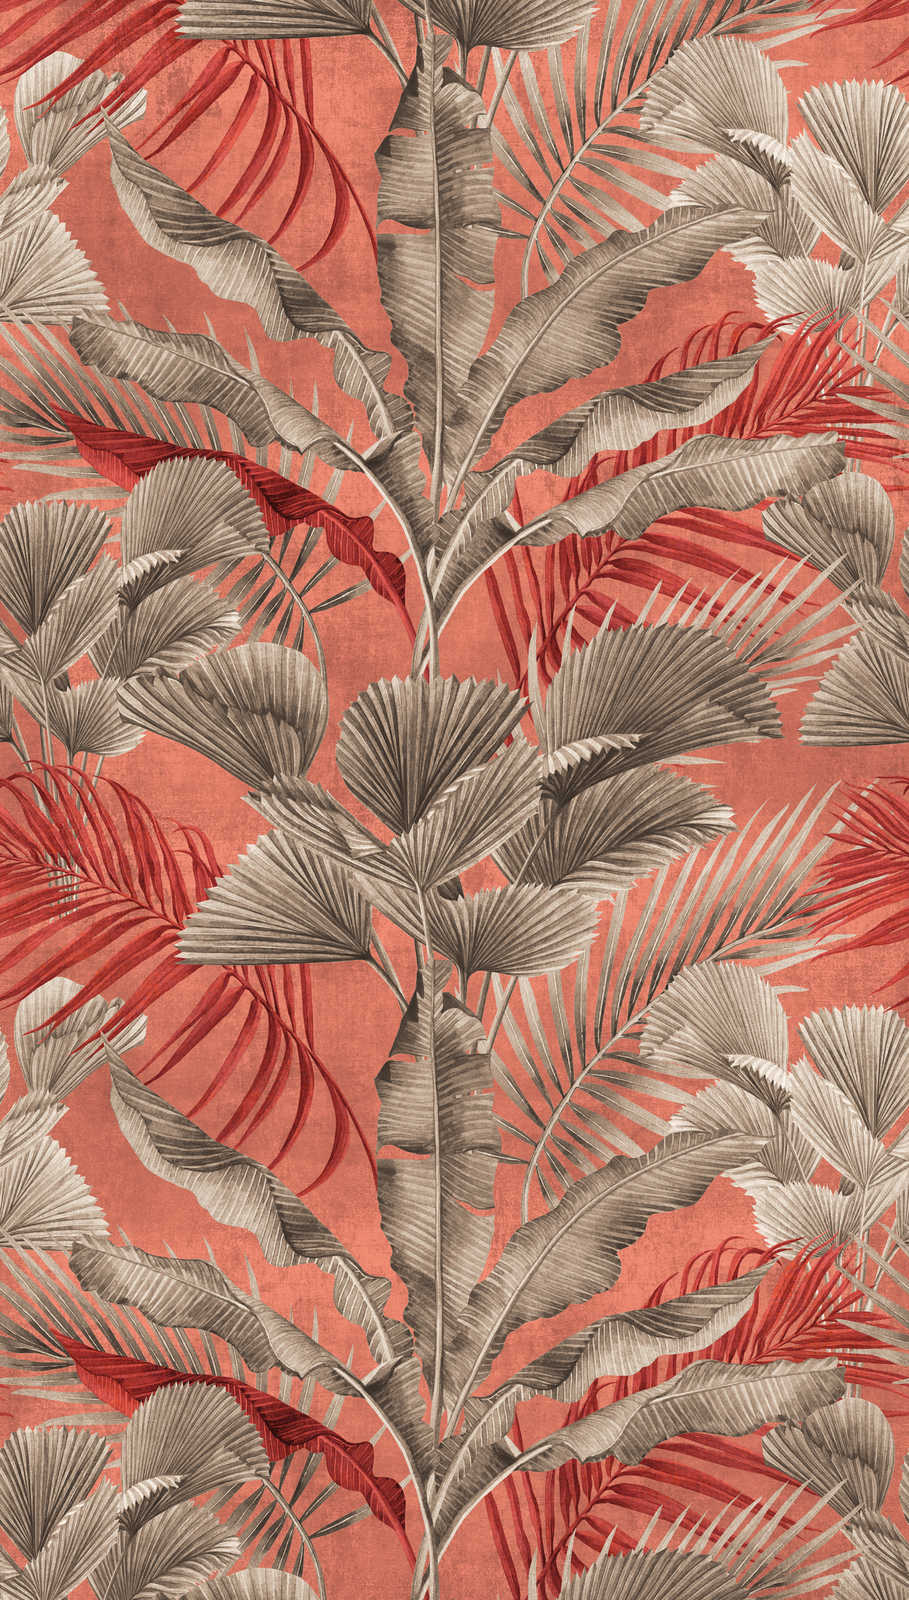             Jungle behang met tropische planten - roze, rood, grijs
        